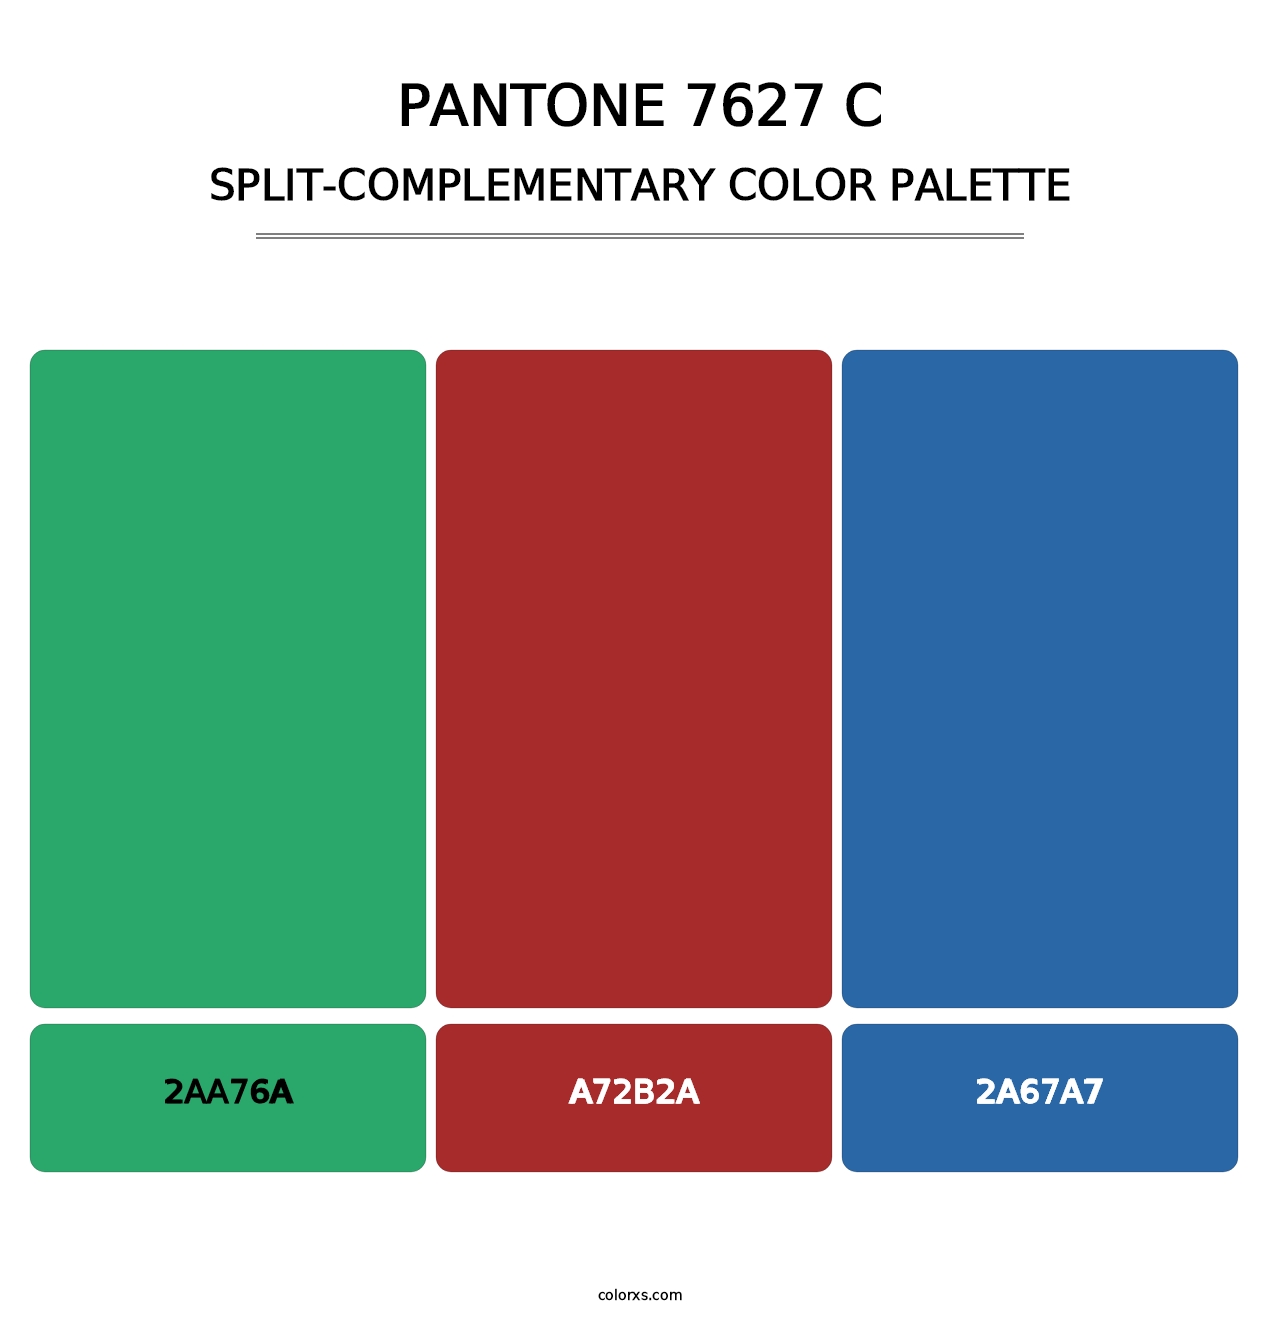 PANTONE 7627 C - Split-Complementary Color Palette